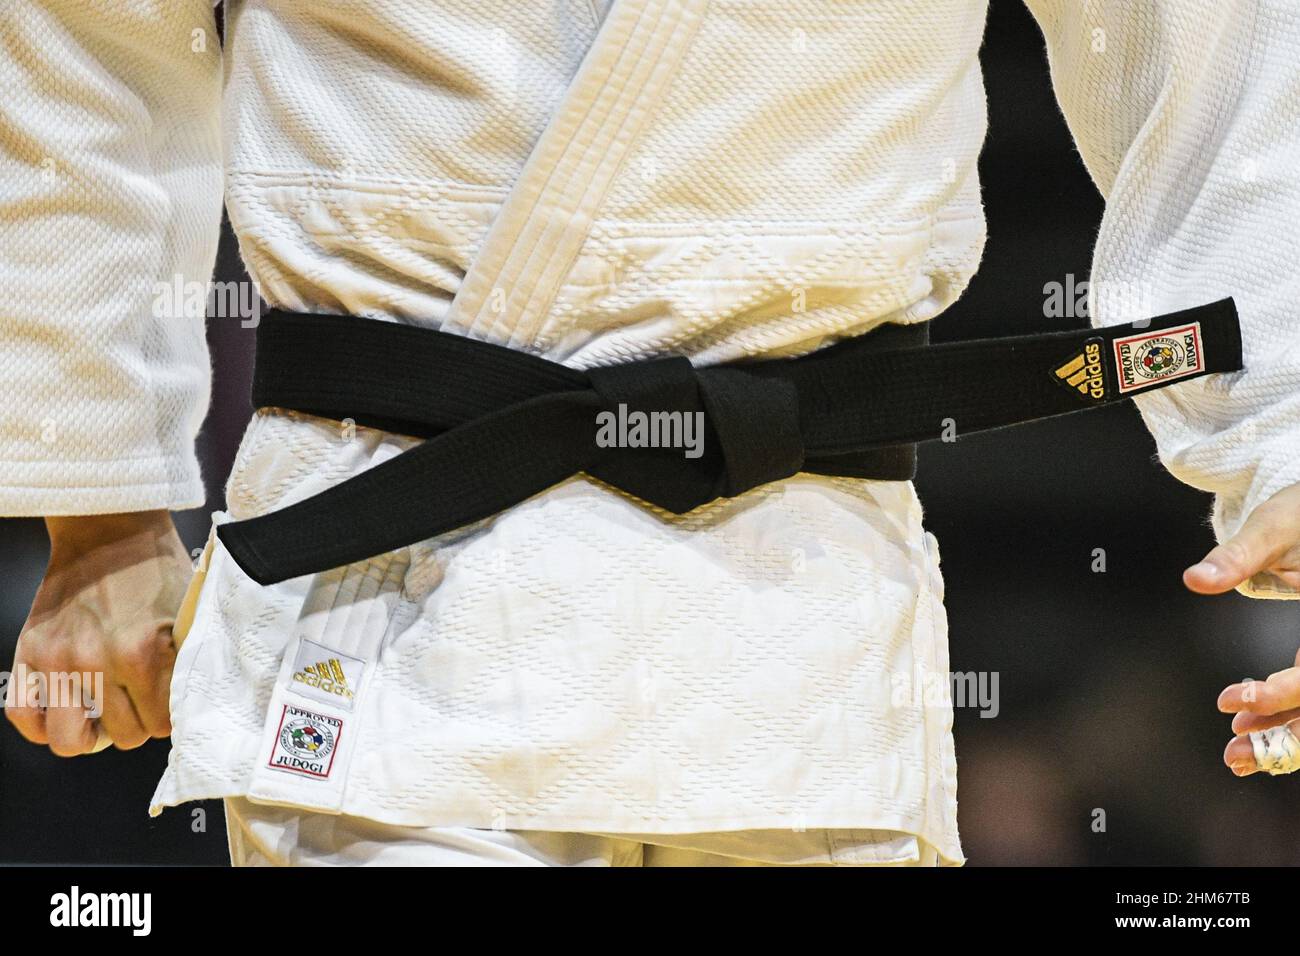 L'immagine mostra un judogi/kimono bianco di un combattente judoka/judo ( cintura nera) durante il Grand Slam di Parigi 2022, IJF World Judo Tour il  6 febbraio 2022 presso l'Accor Arena di Parigi, Francia -